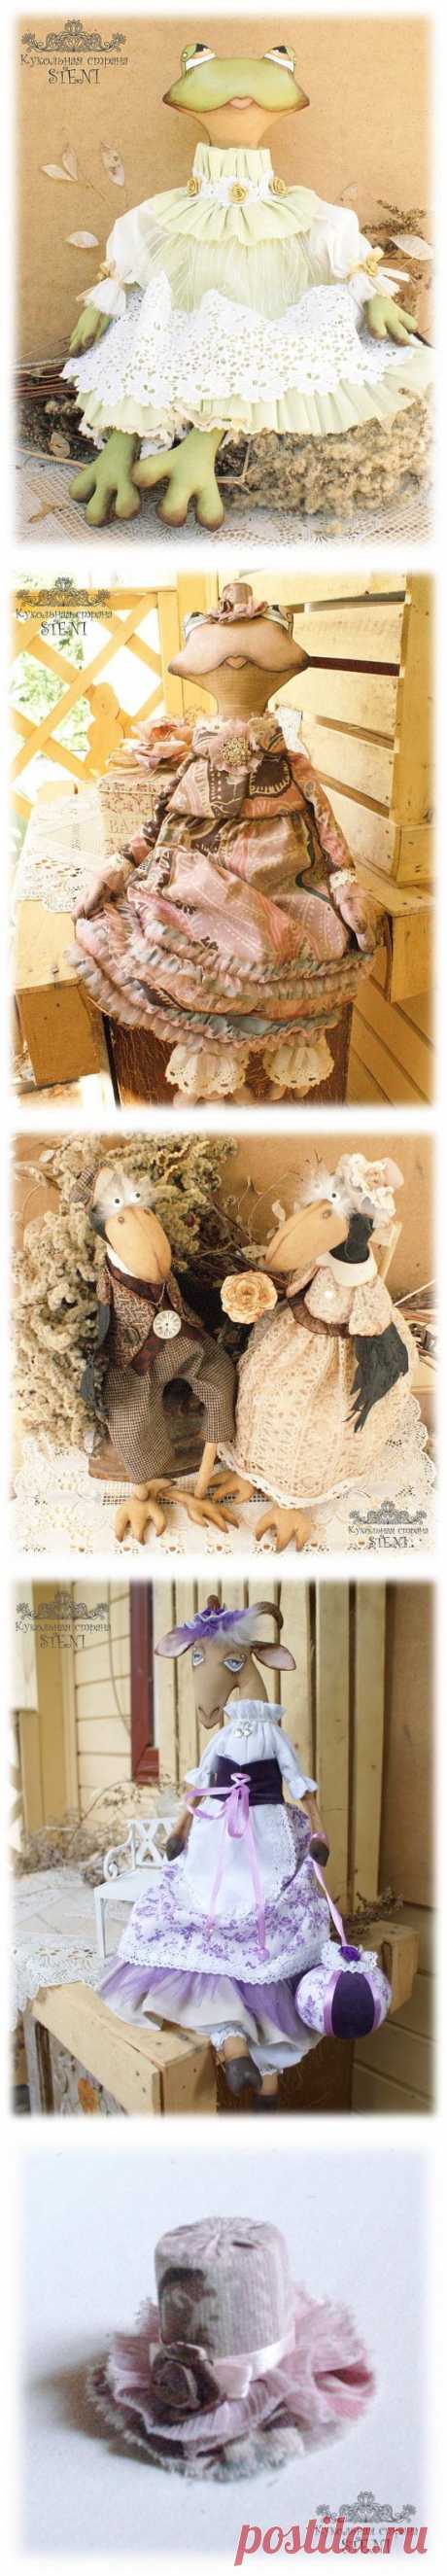 Мастер Кукольная страна STENI (Анастасия) - коллекционные текстильные игрушки животных с МК мастера по пошиву кукольной шляпки